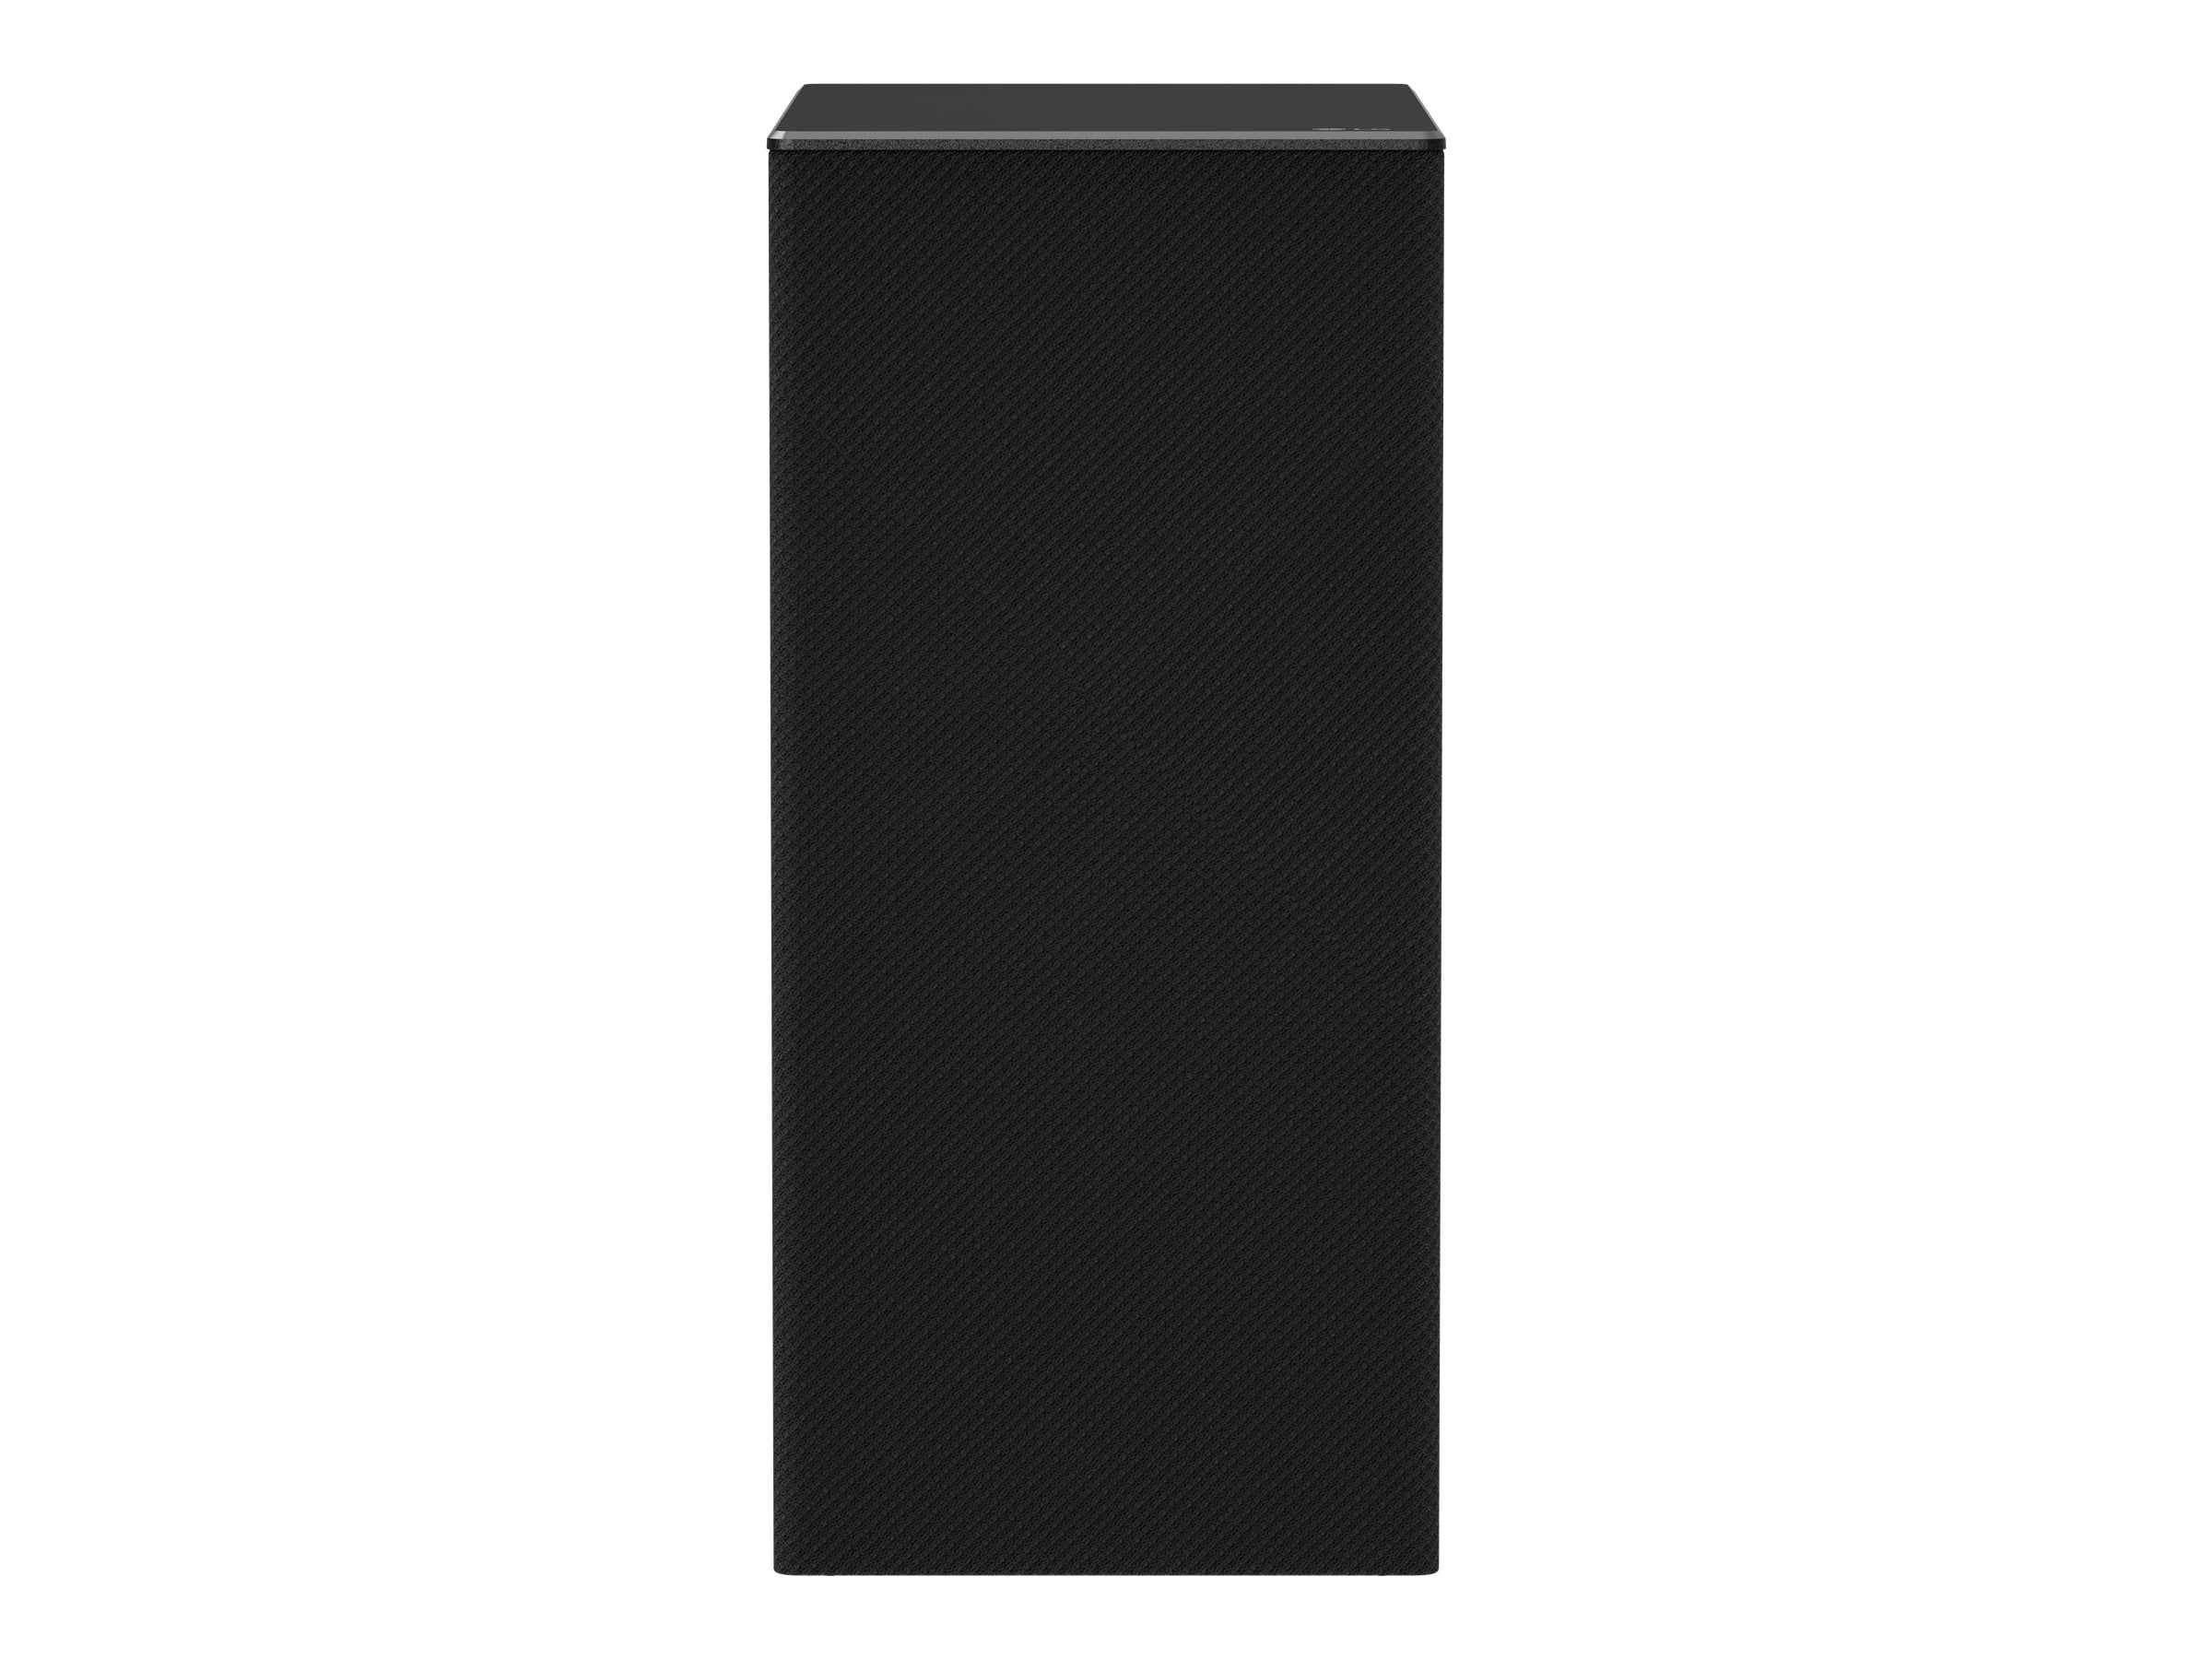 LG 3.1.2 Channel High-Resolution Audio Sound Bar with Dolby Atmos - SPD7Y -  Sam's Club